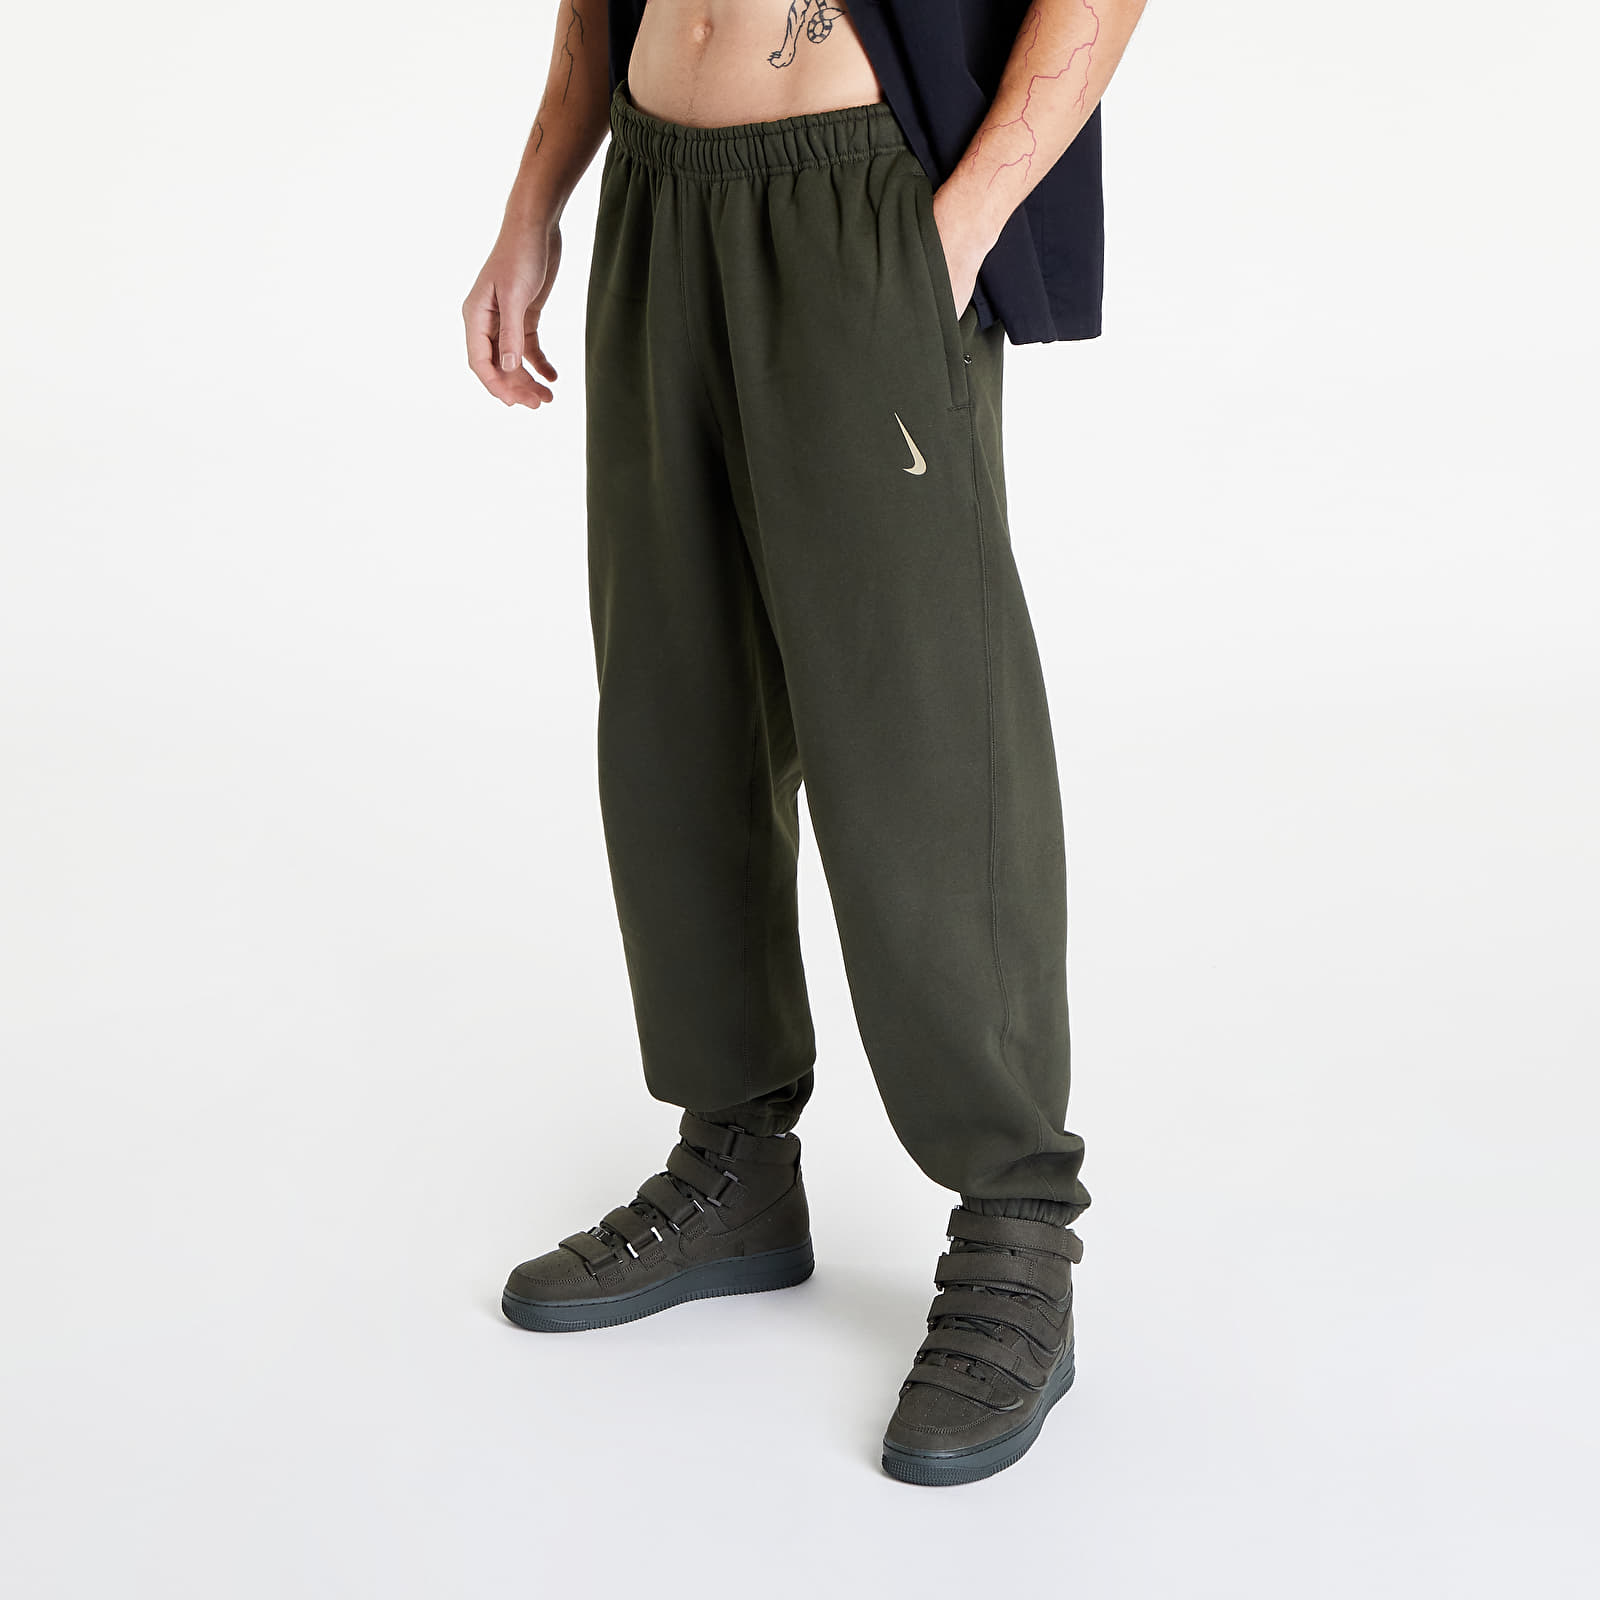 Pantalons Nike x Billie Eilish Fleece Pants Sequoia/ Mushroom/ Mushroom